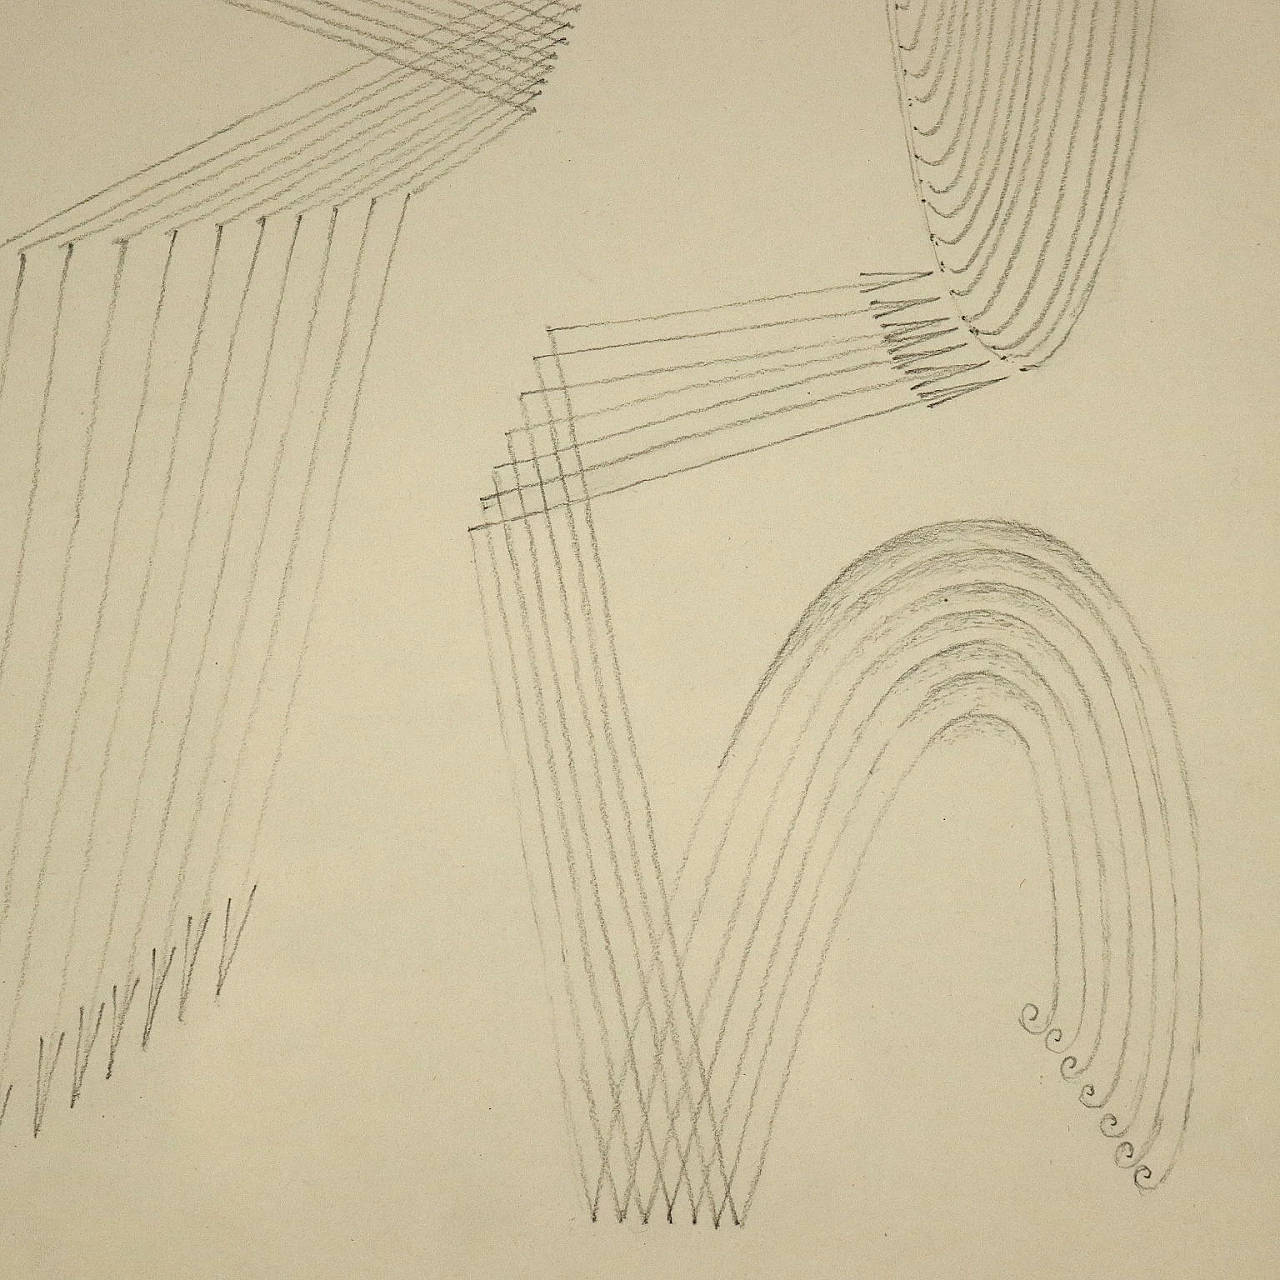 Fausto Melotti, soggetto astratto, matita su carta, 1972 3